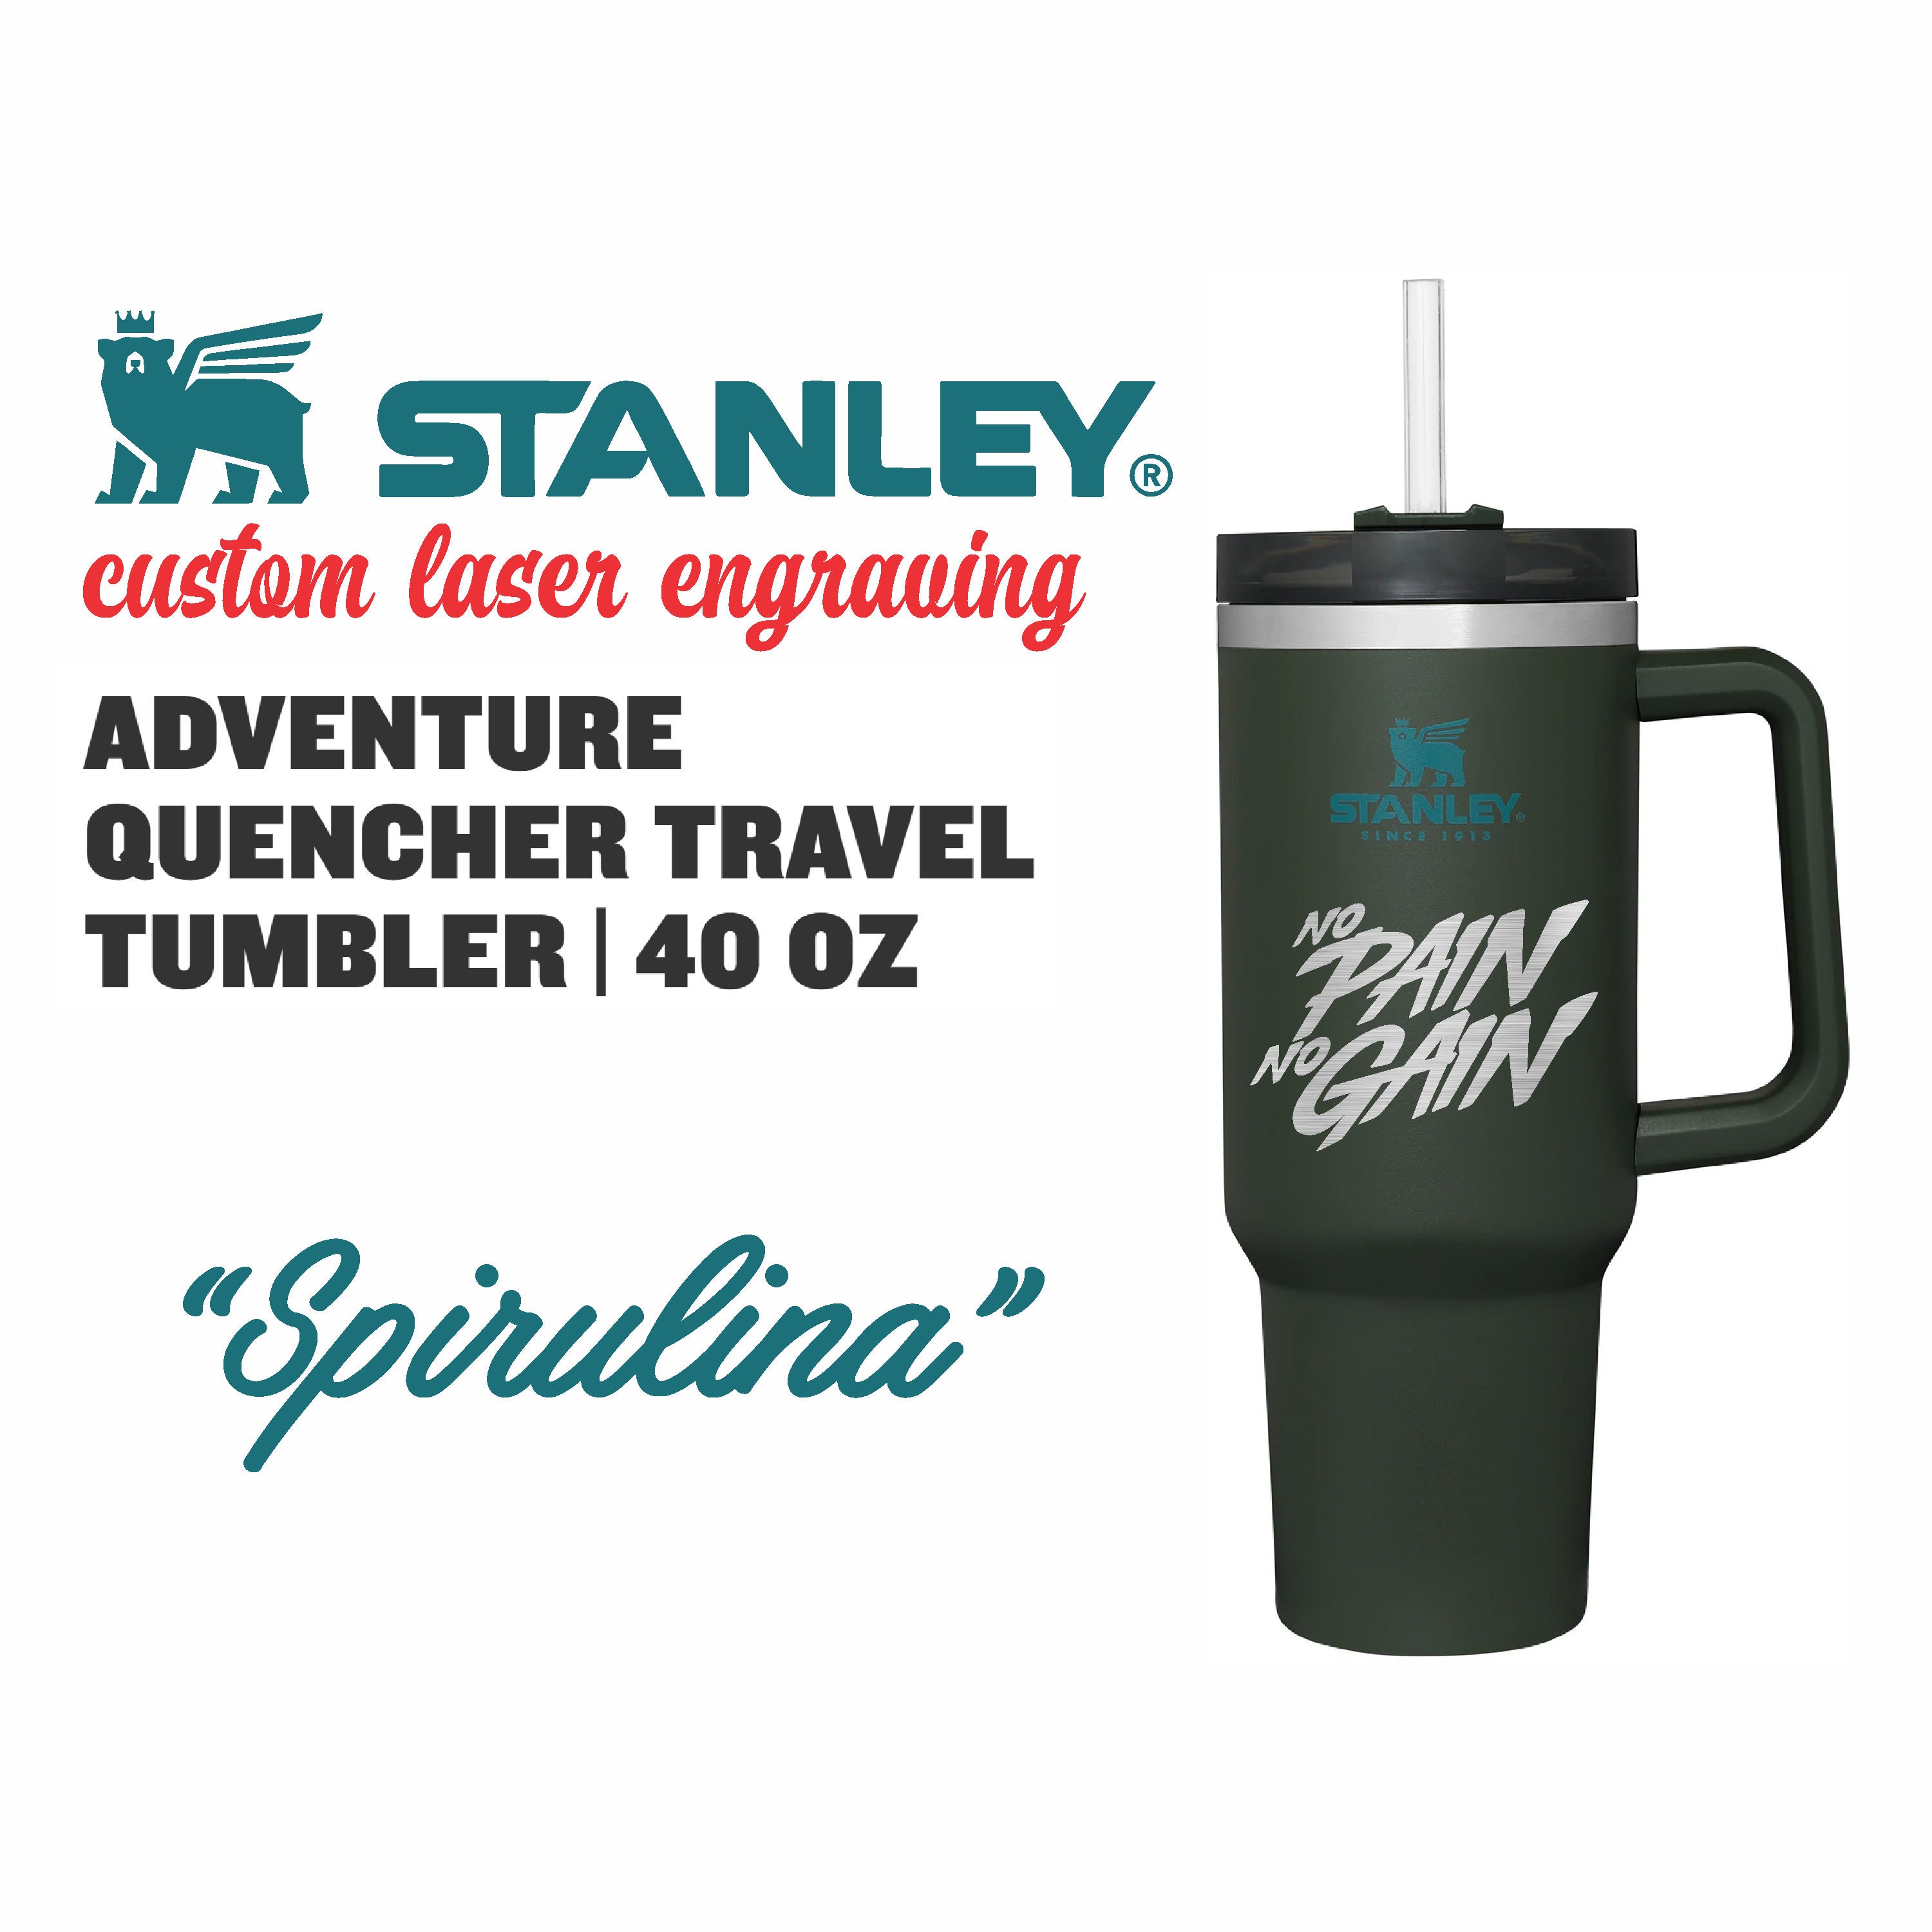 Stanley Adventure Travel Quencher 40 oz Tumbler - Spirulina Dark Green BNWOT